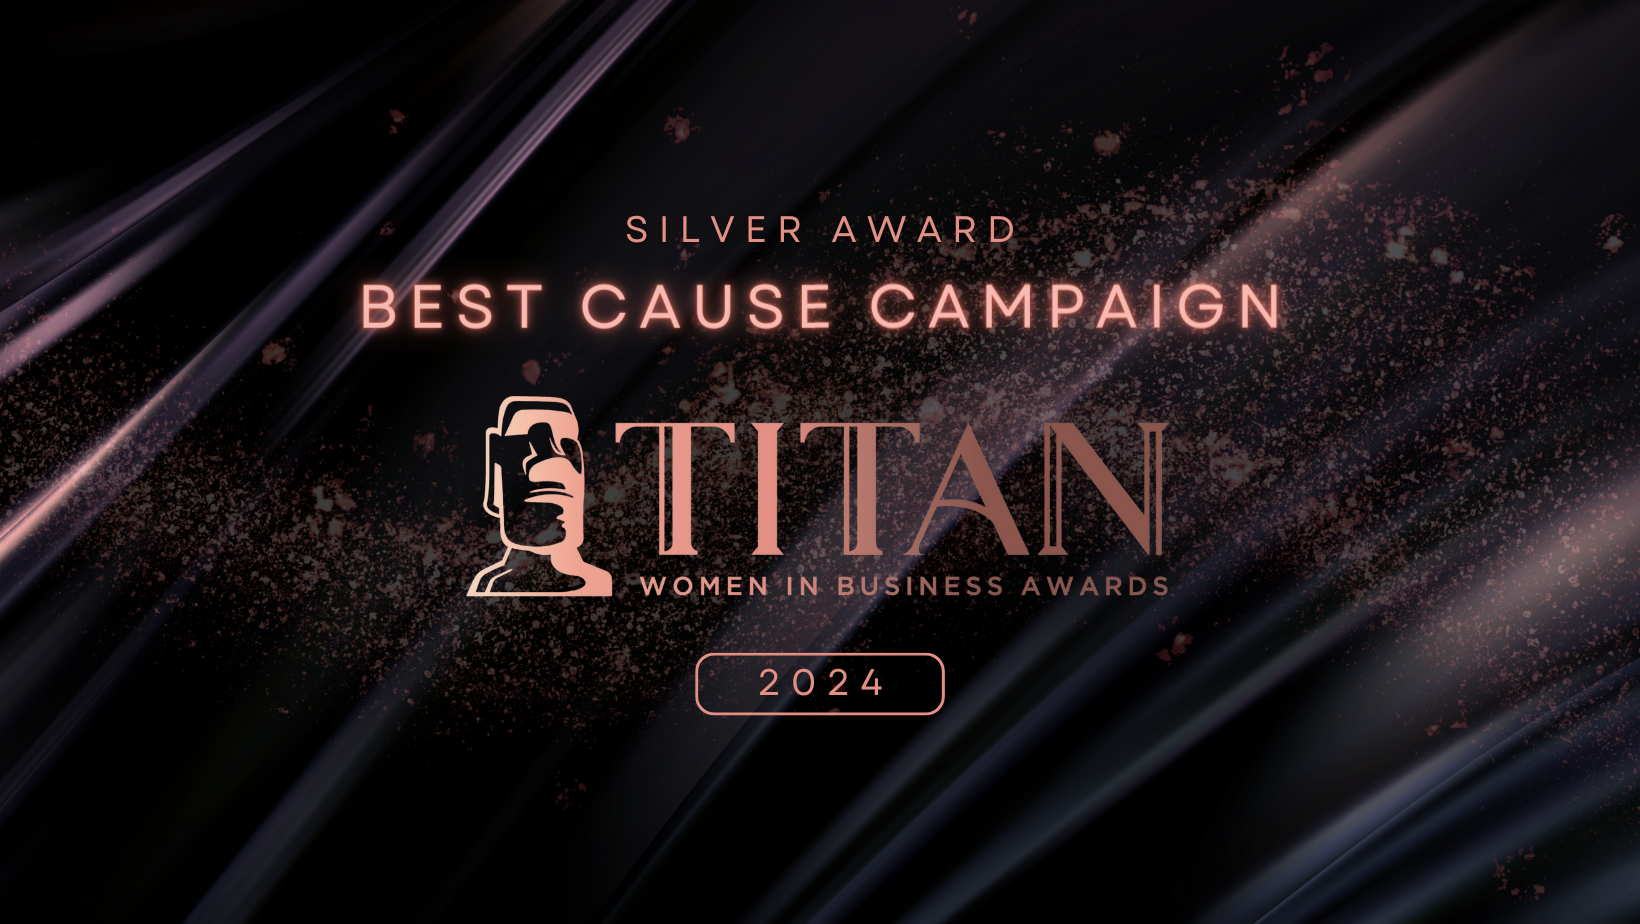 SPLIT14 CREATIVE NAMED A WINNER FOR SEASON 1 OF THE 2024 TITAN WOMEN IN BUSINESS AWARDS